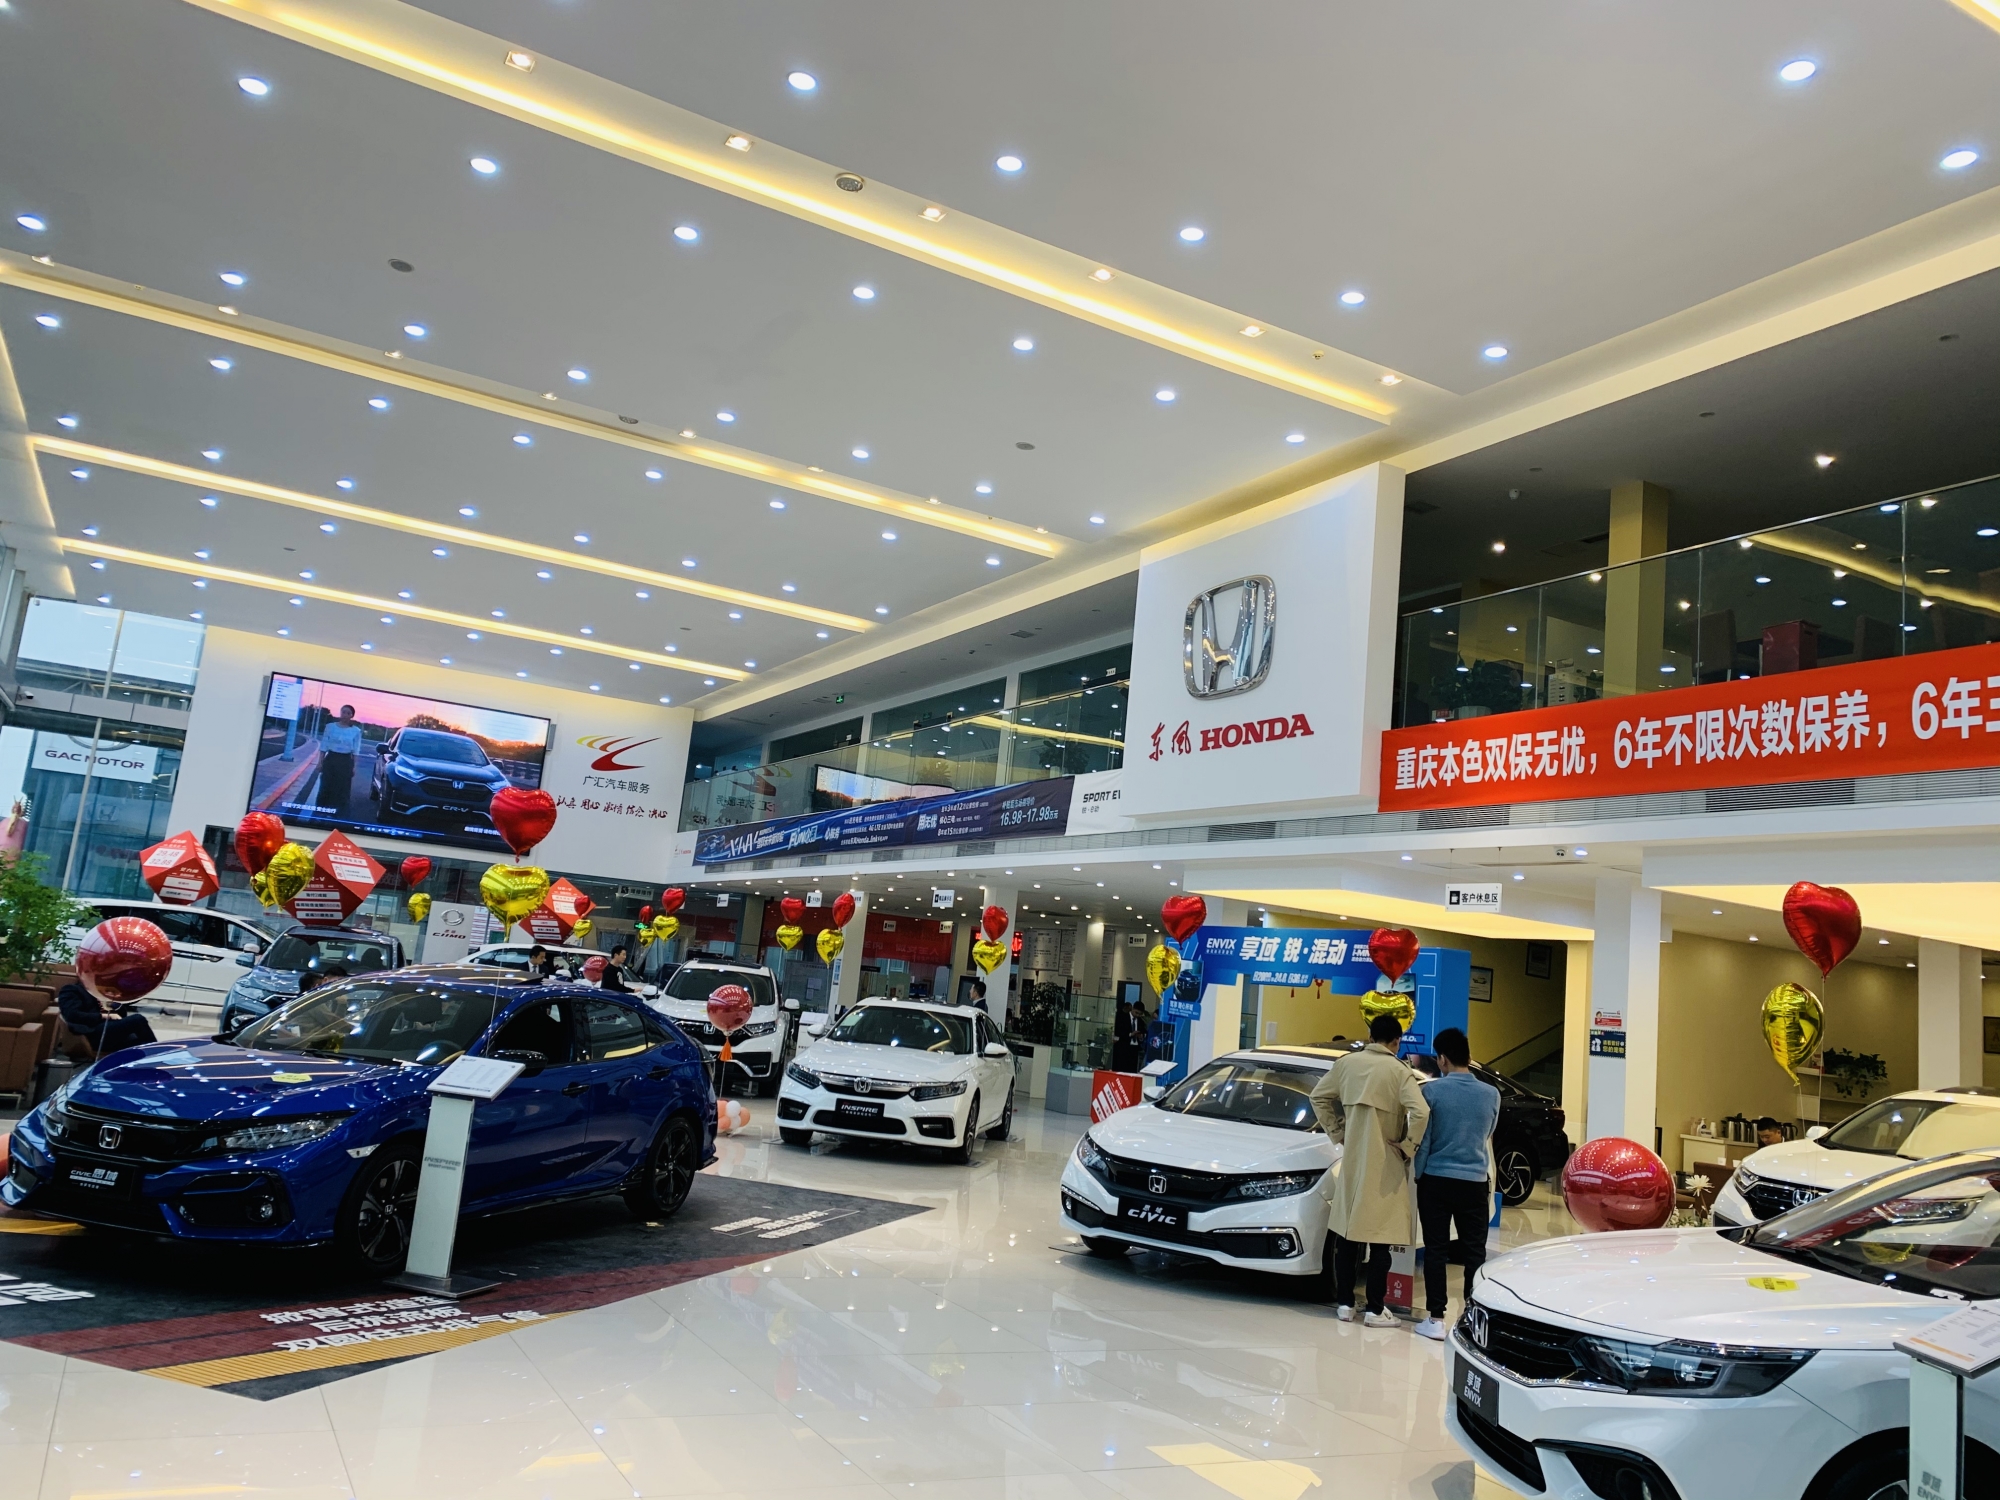 重庆中汽西南本色汽车销售有限公司 环境照片活动图片